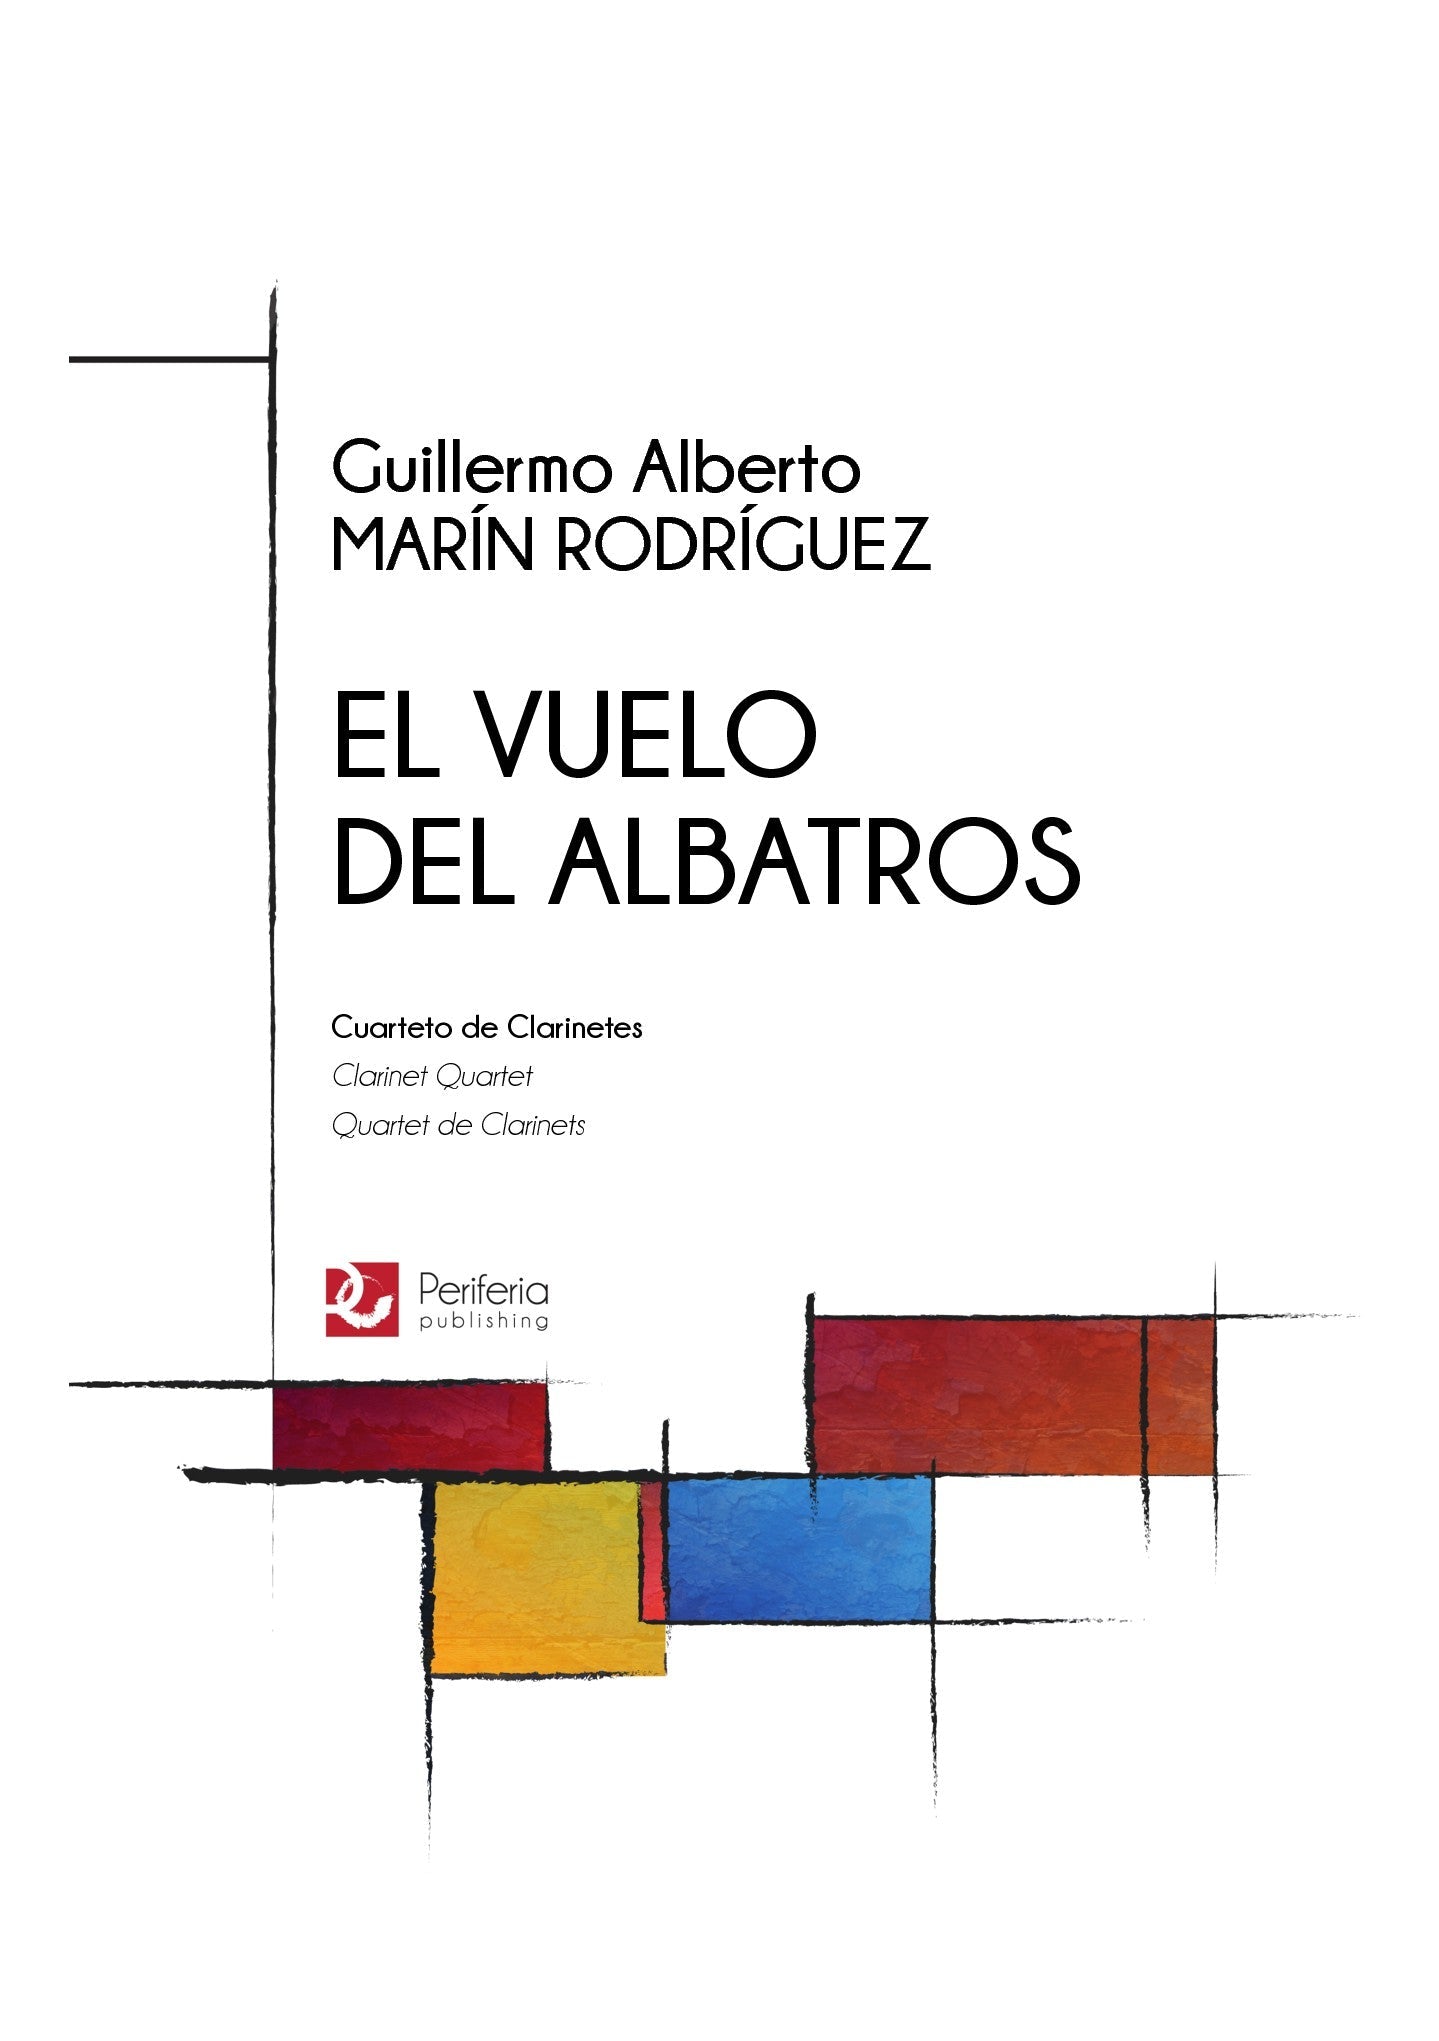 Marín Rodríguez - El Vuelo del Albatros for Clarinet Quartet